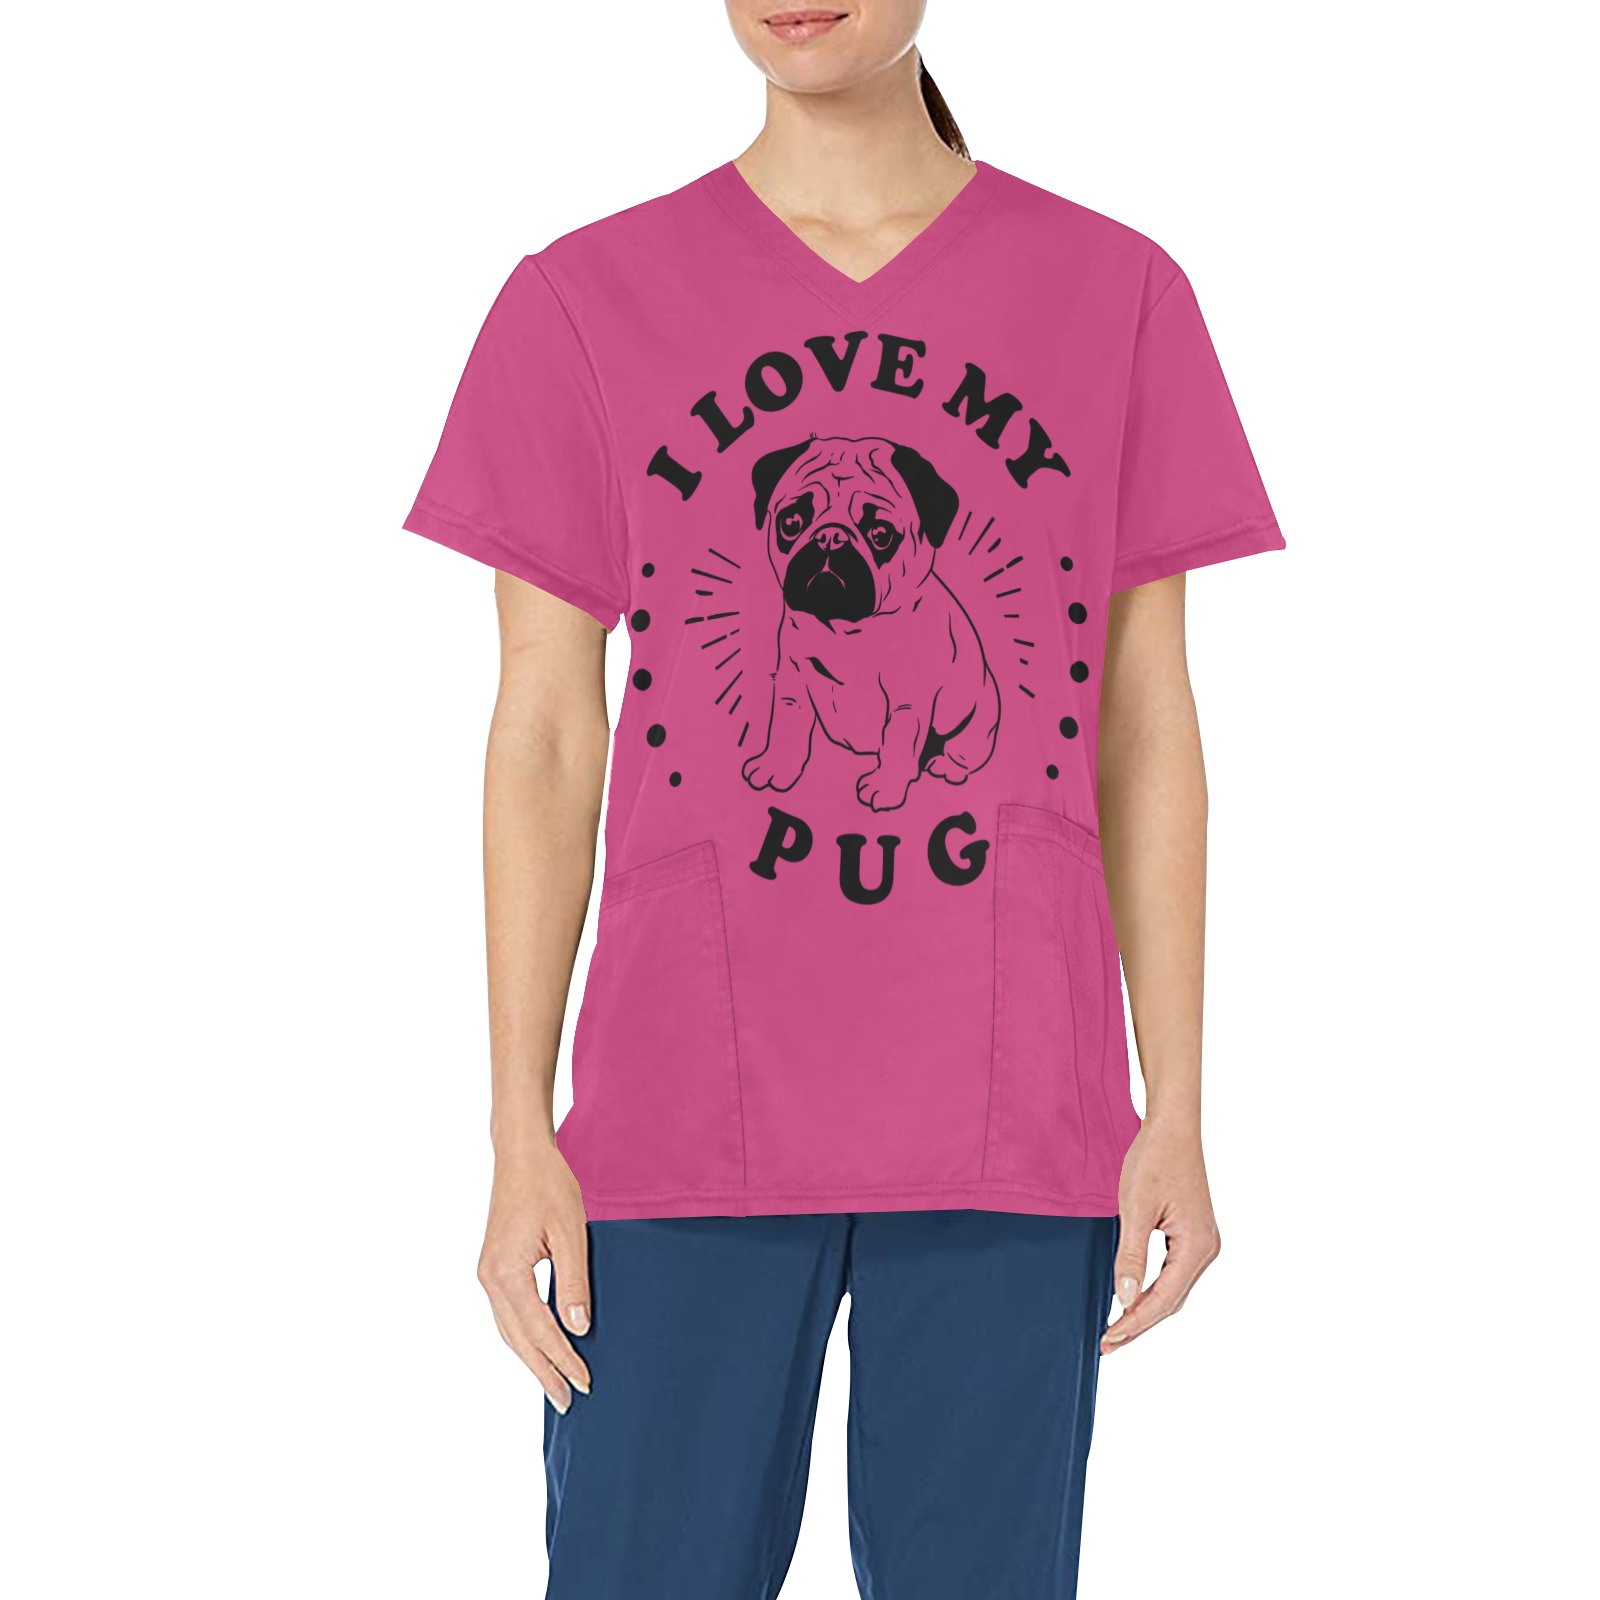 I love my pug All Over Print Scrub Top